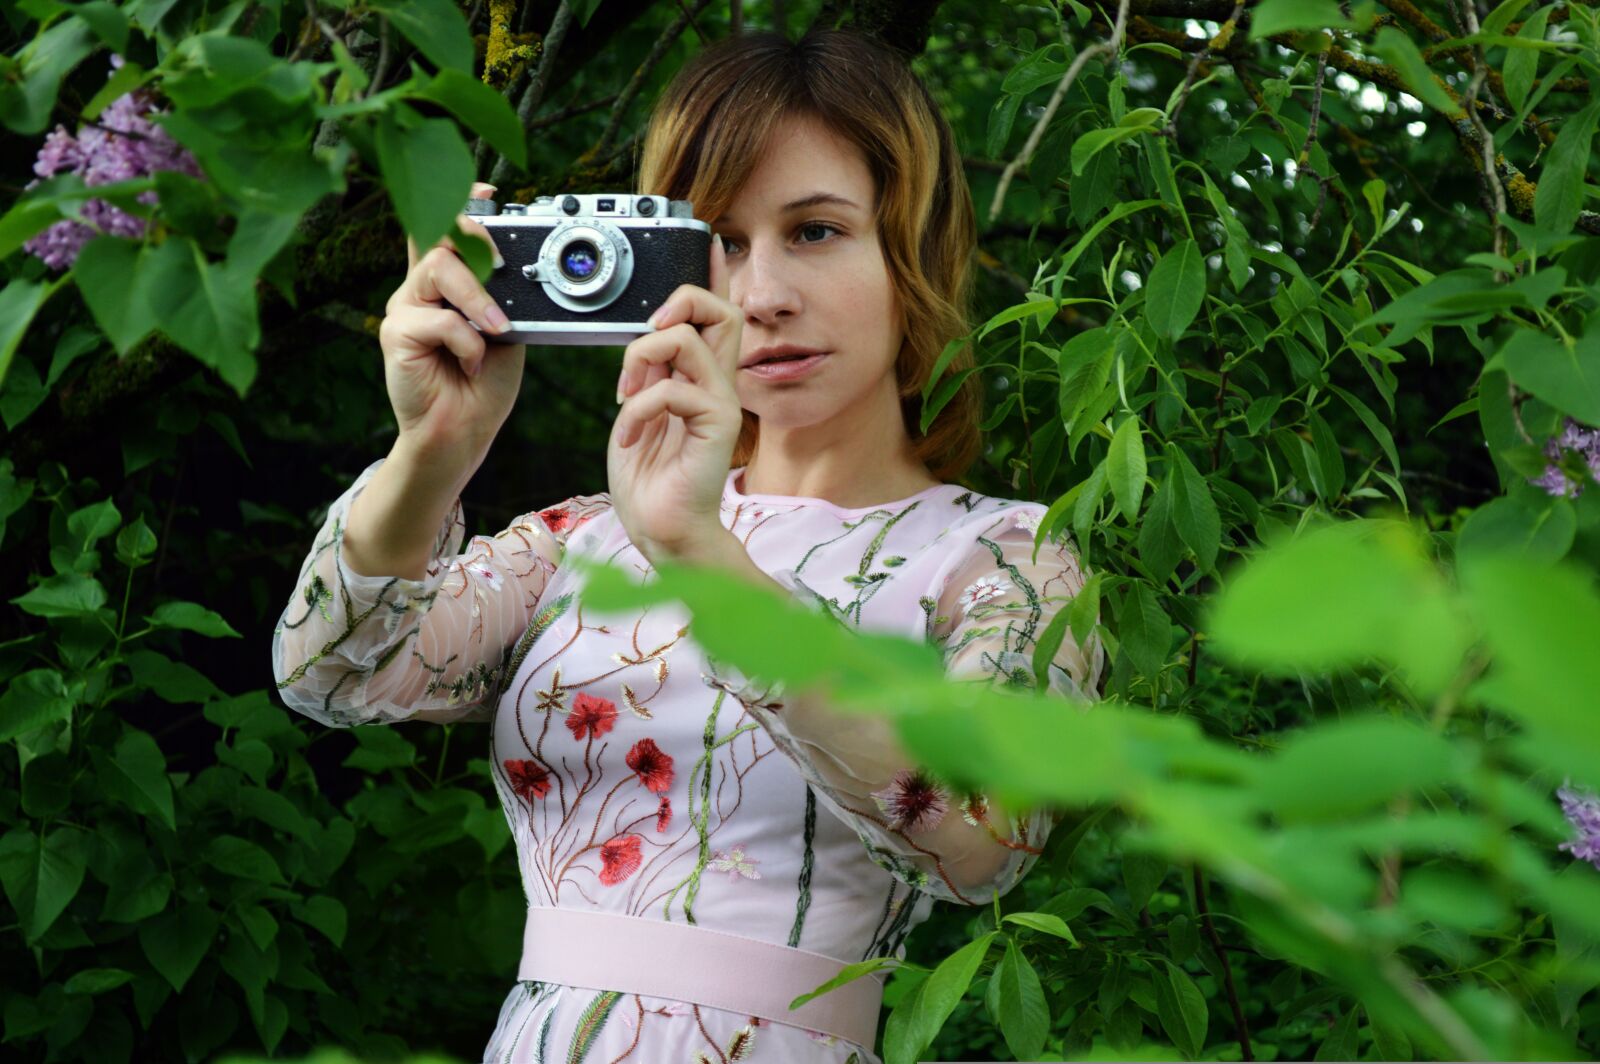 Nikon D3200 sample photo. Photographer, camera, woman photography